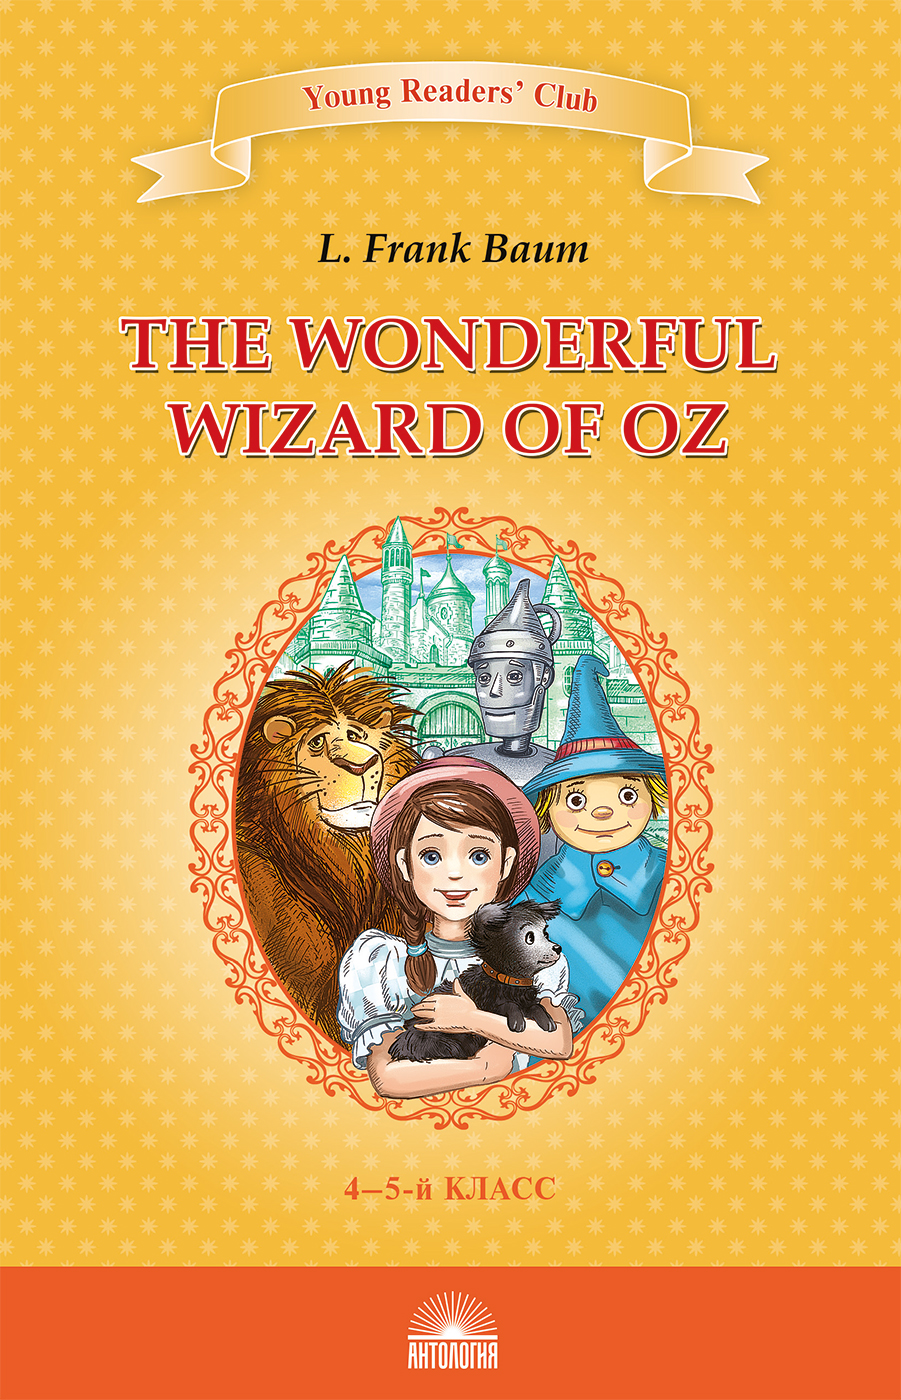 Удивительный волшебник из страны Оз (The Wonderful Wizard of Oz). Кн. для чт. на англ. яз. в 4-5-м классах